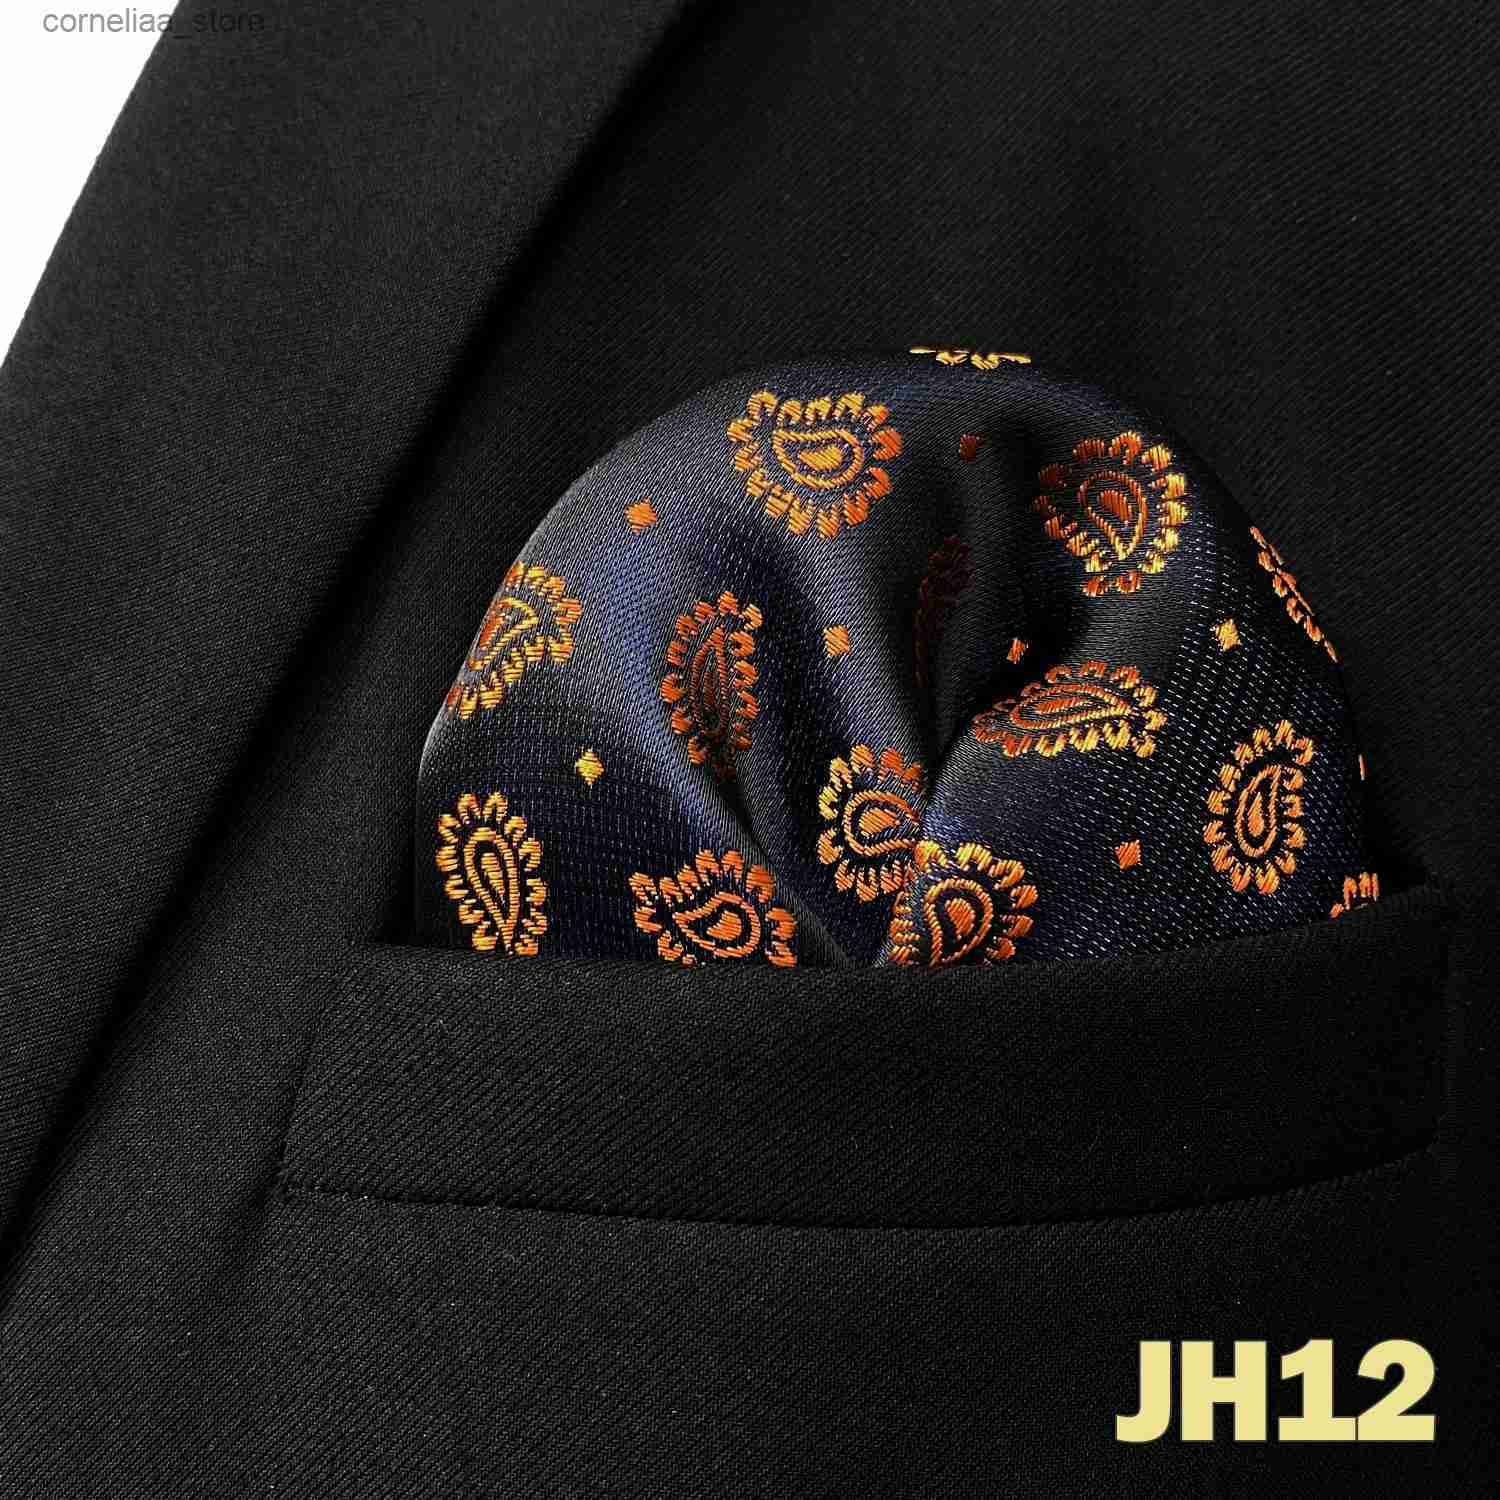 Jh12